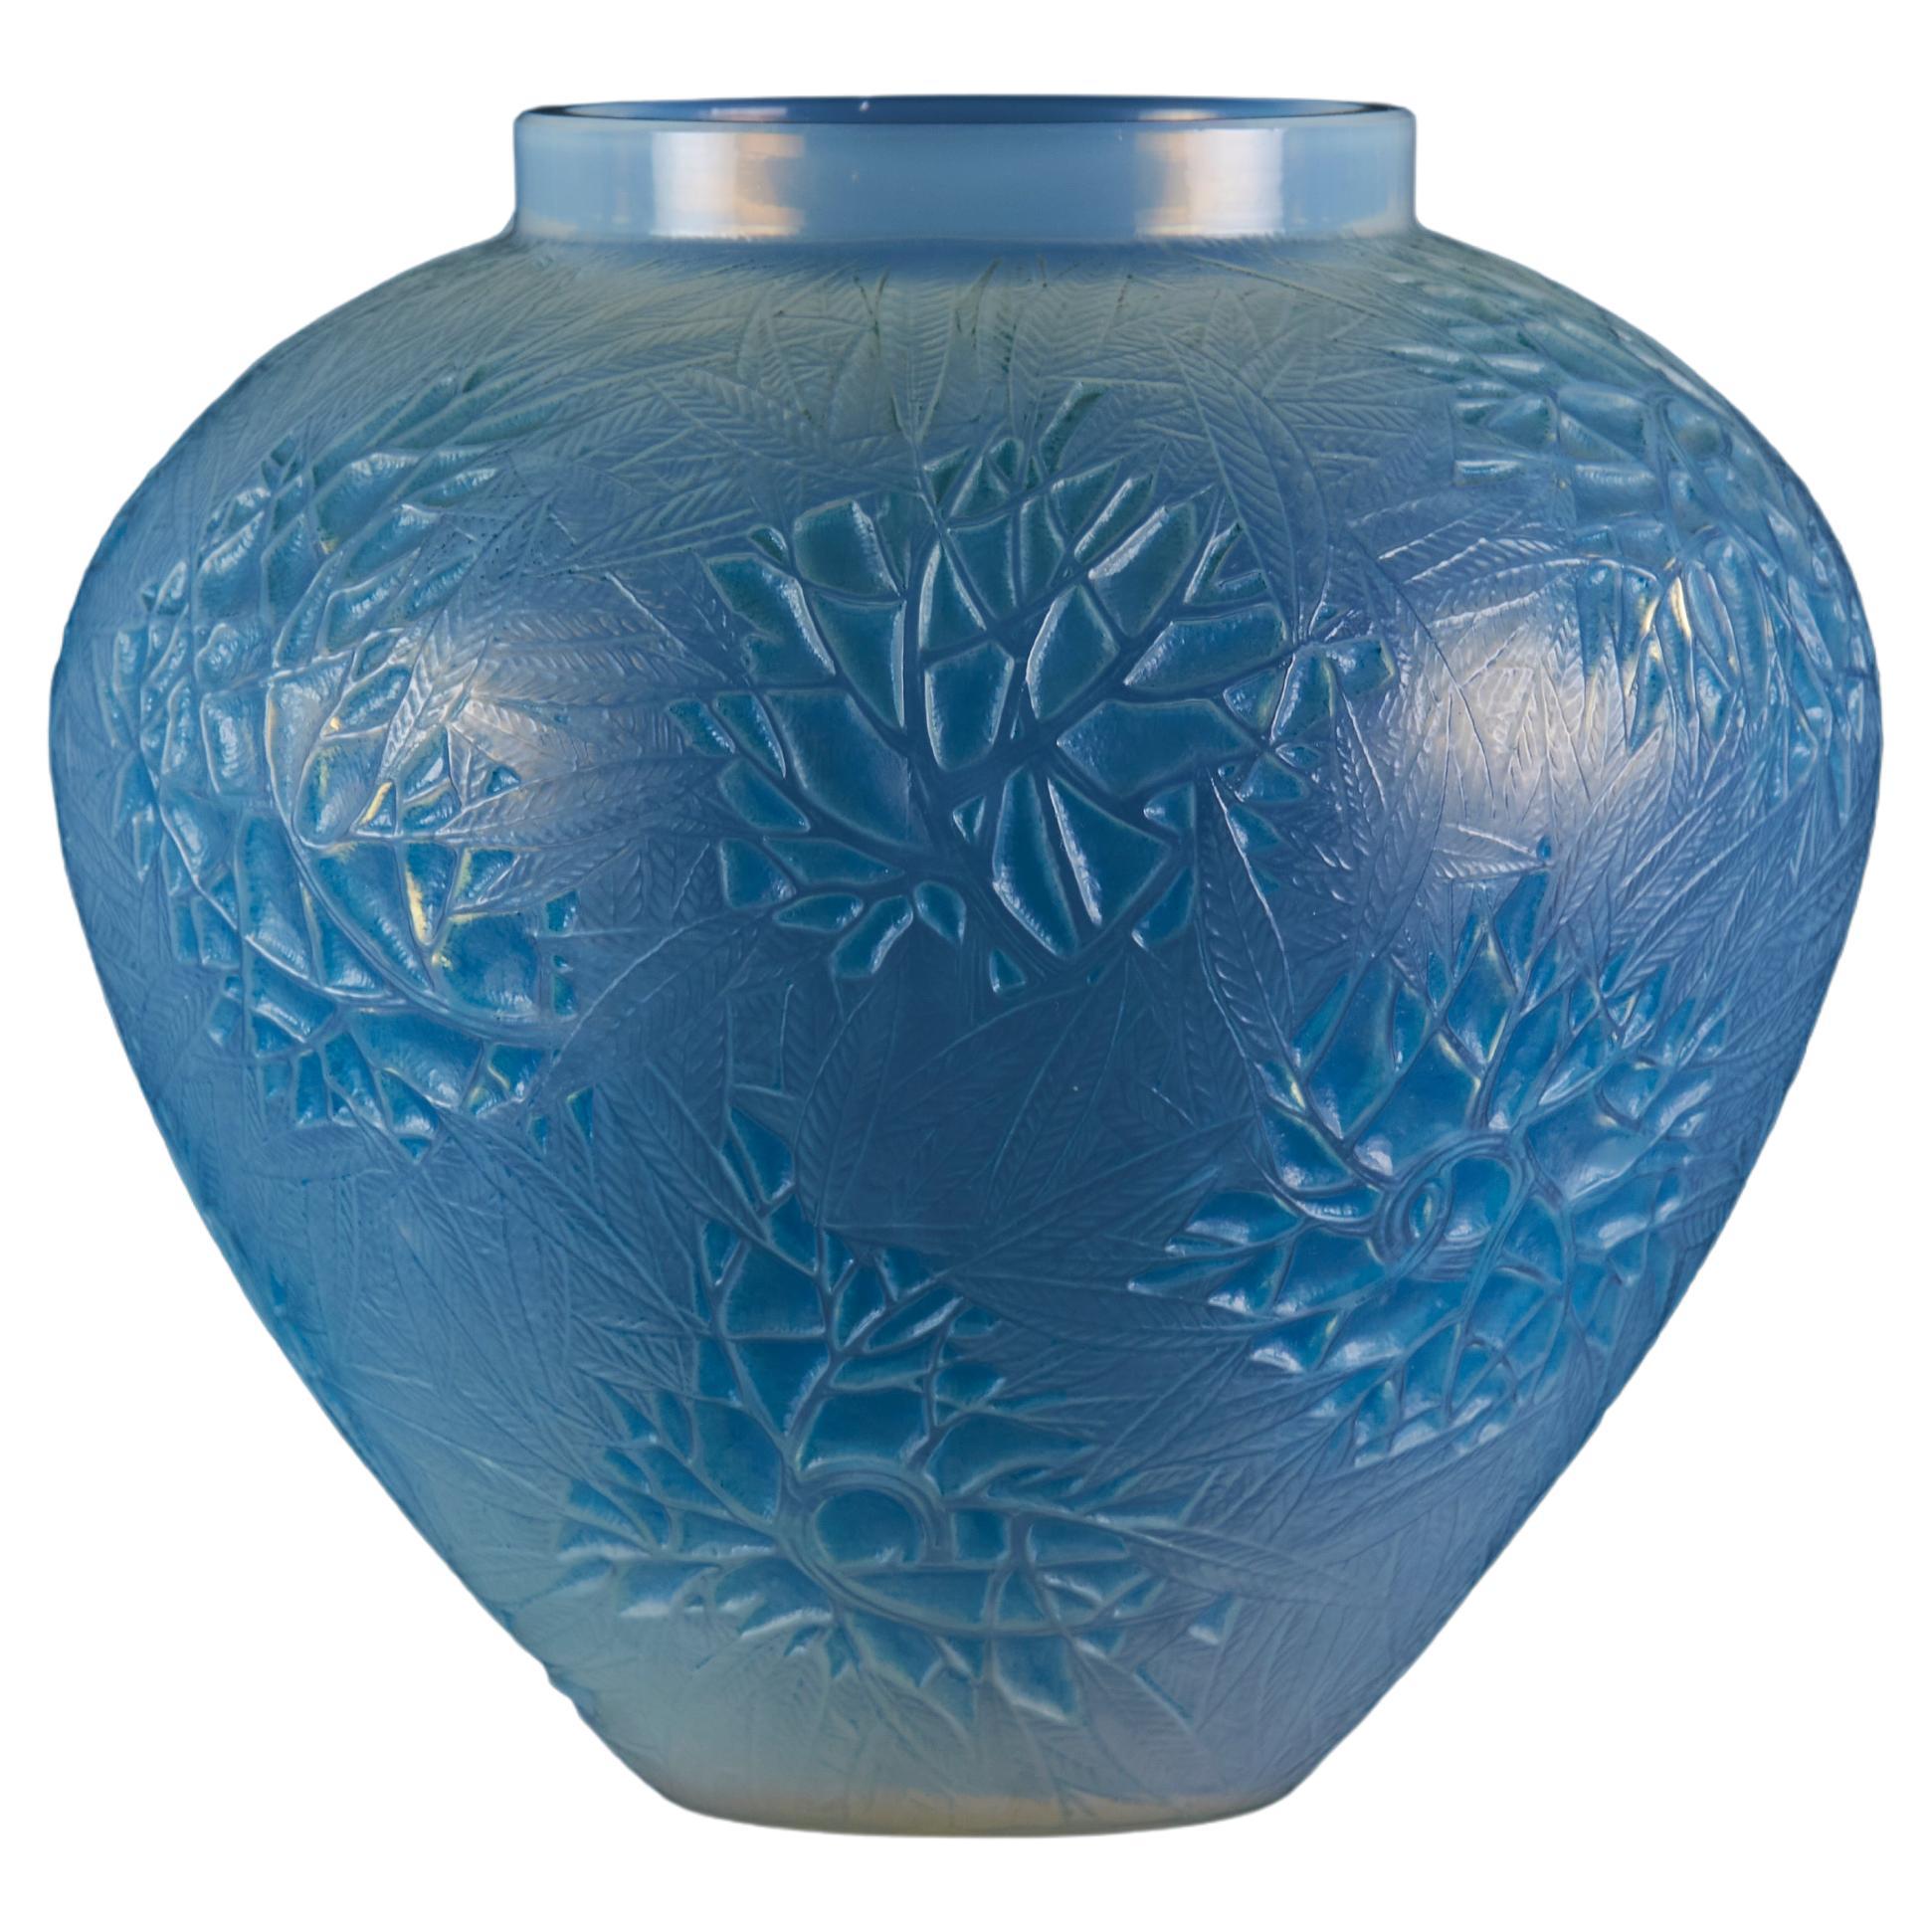 "Esterel Vase" by René Lalique